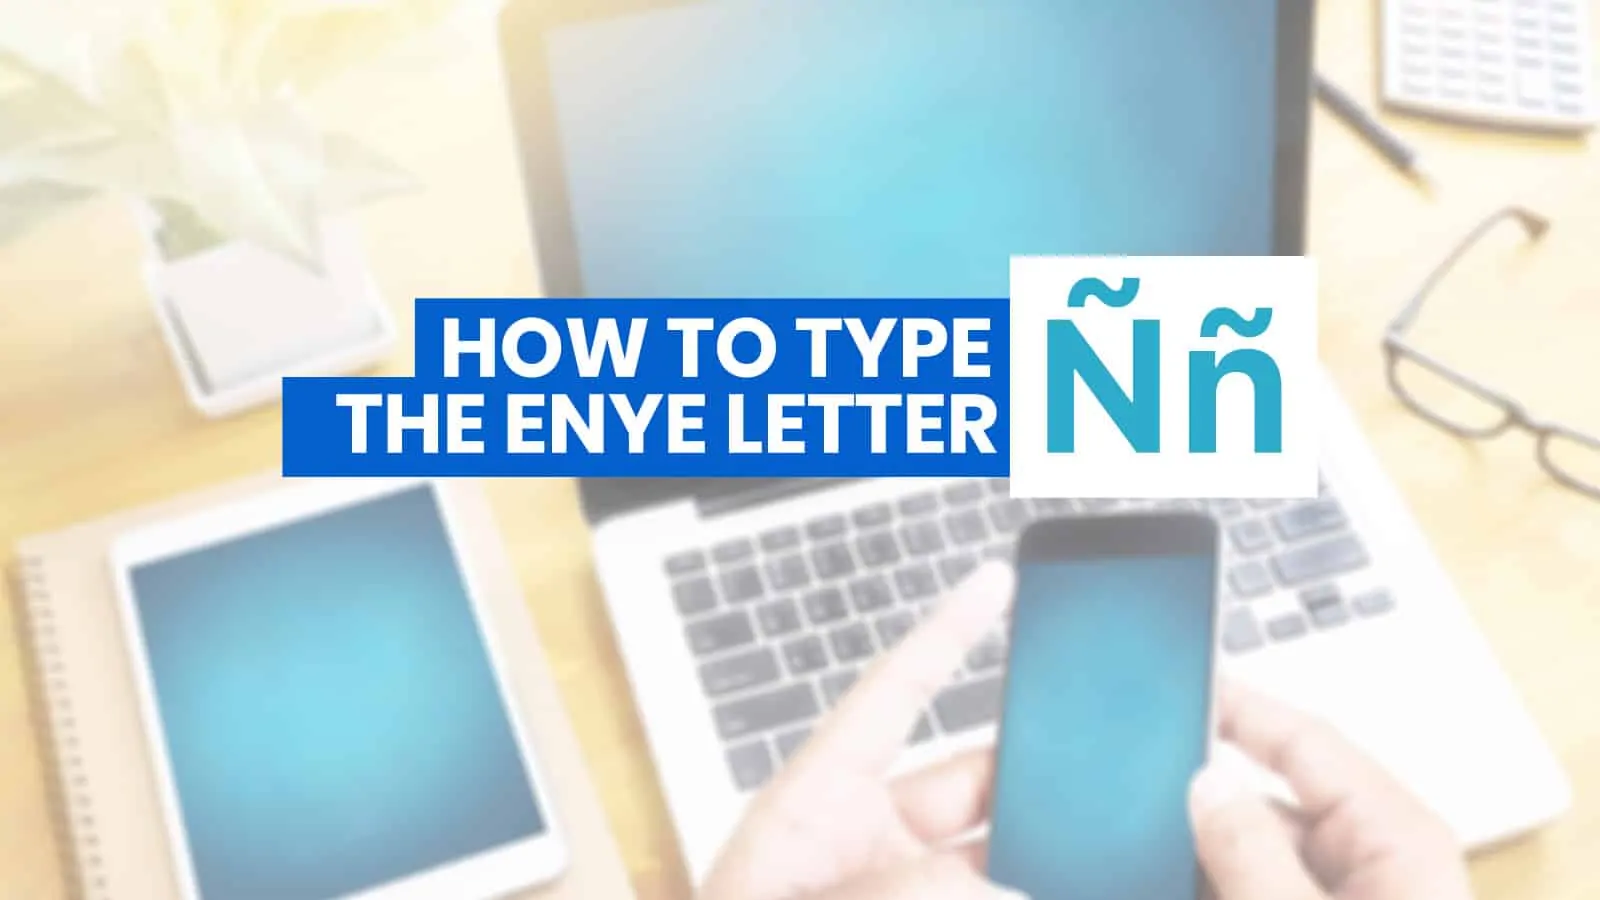 如何在iPhone, Android, Word和电脑上输入ENYE信(Ññ)(有键盘快捷键)